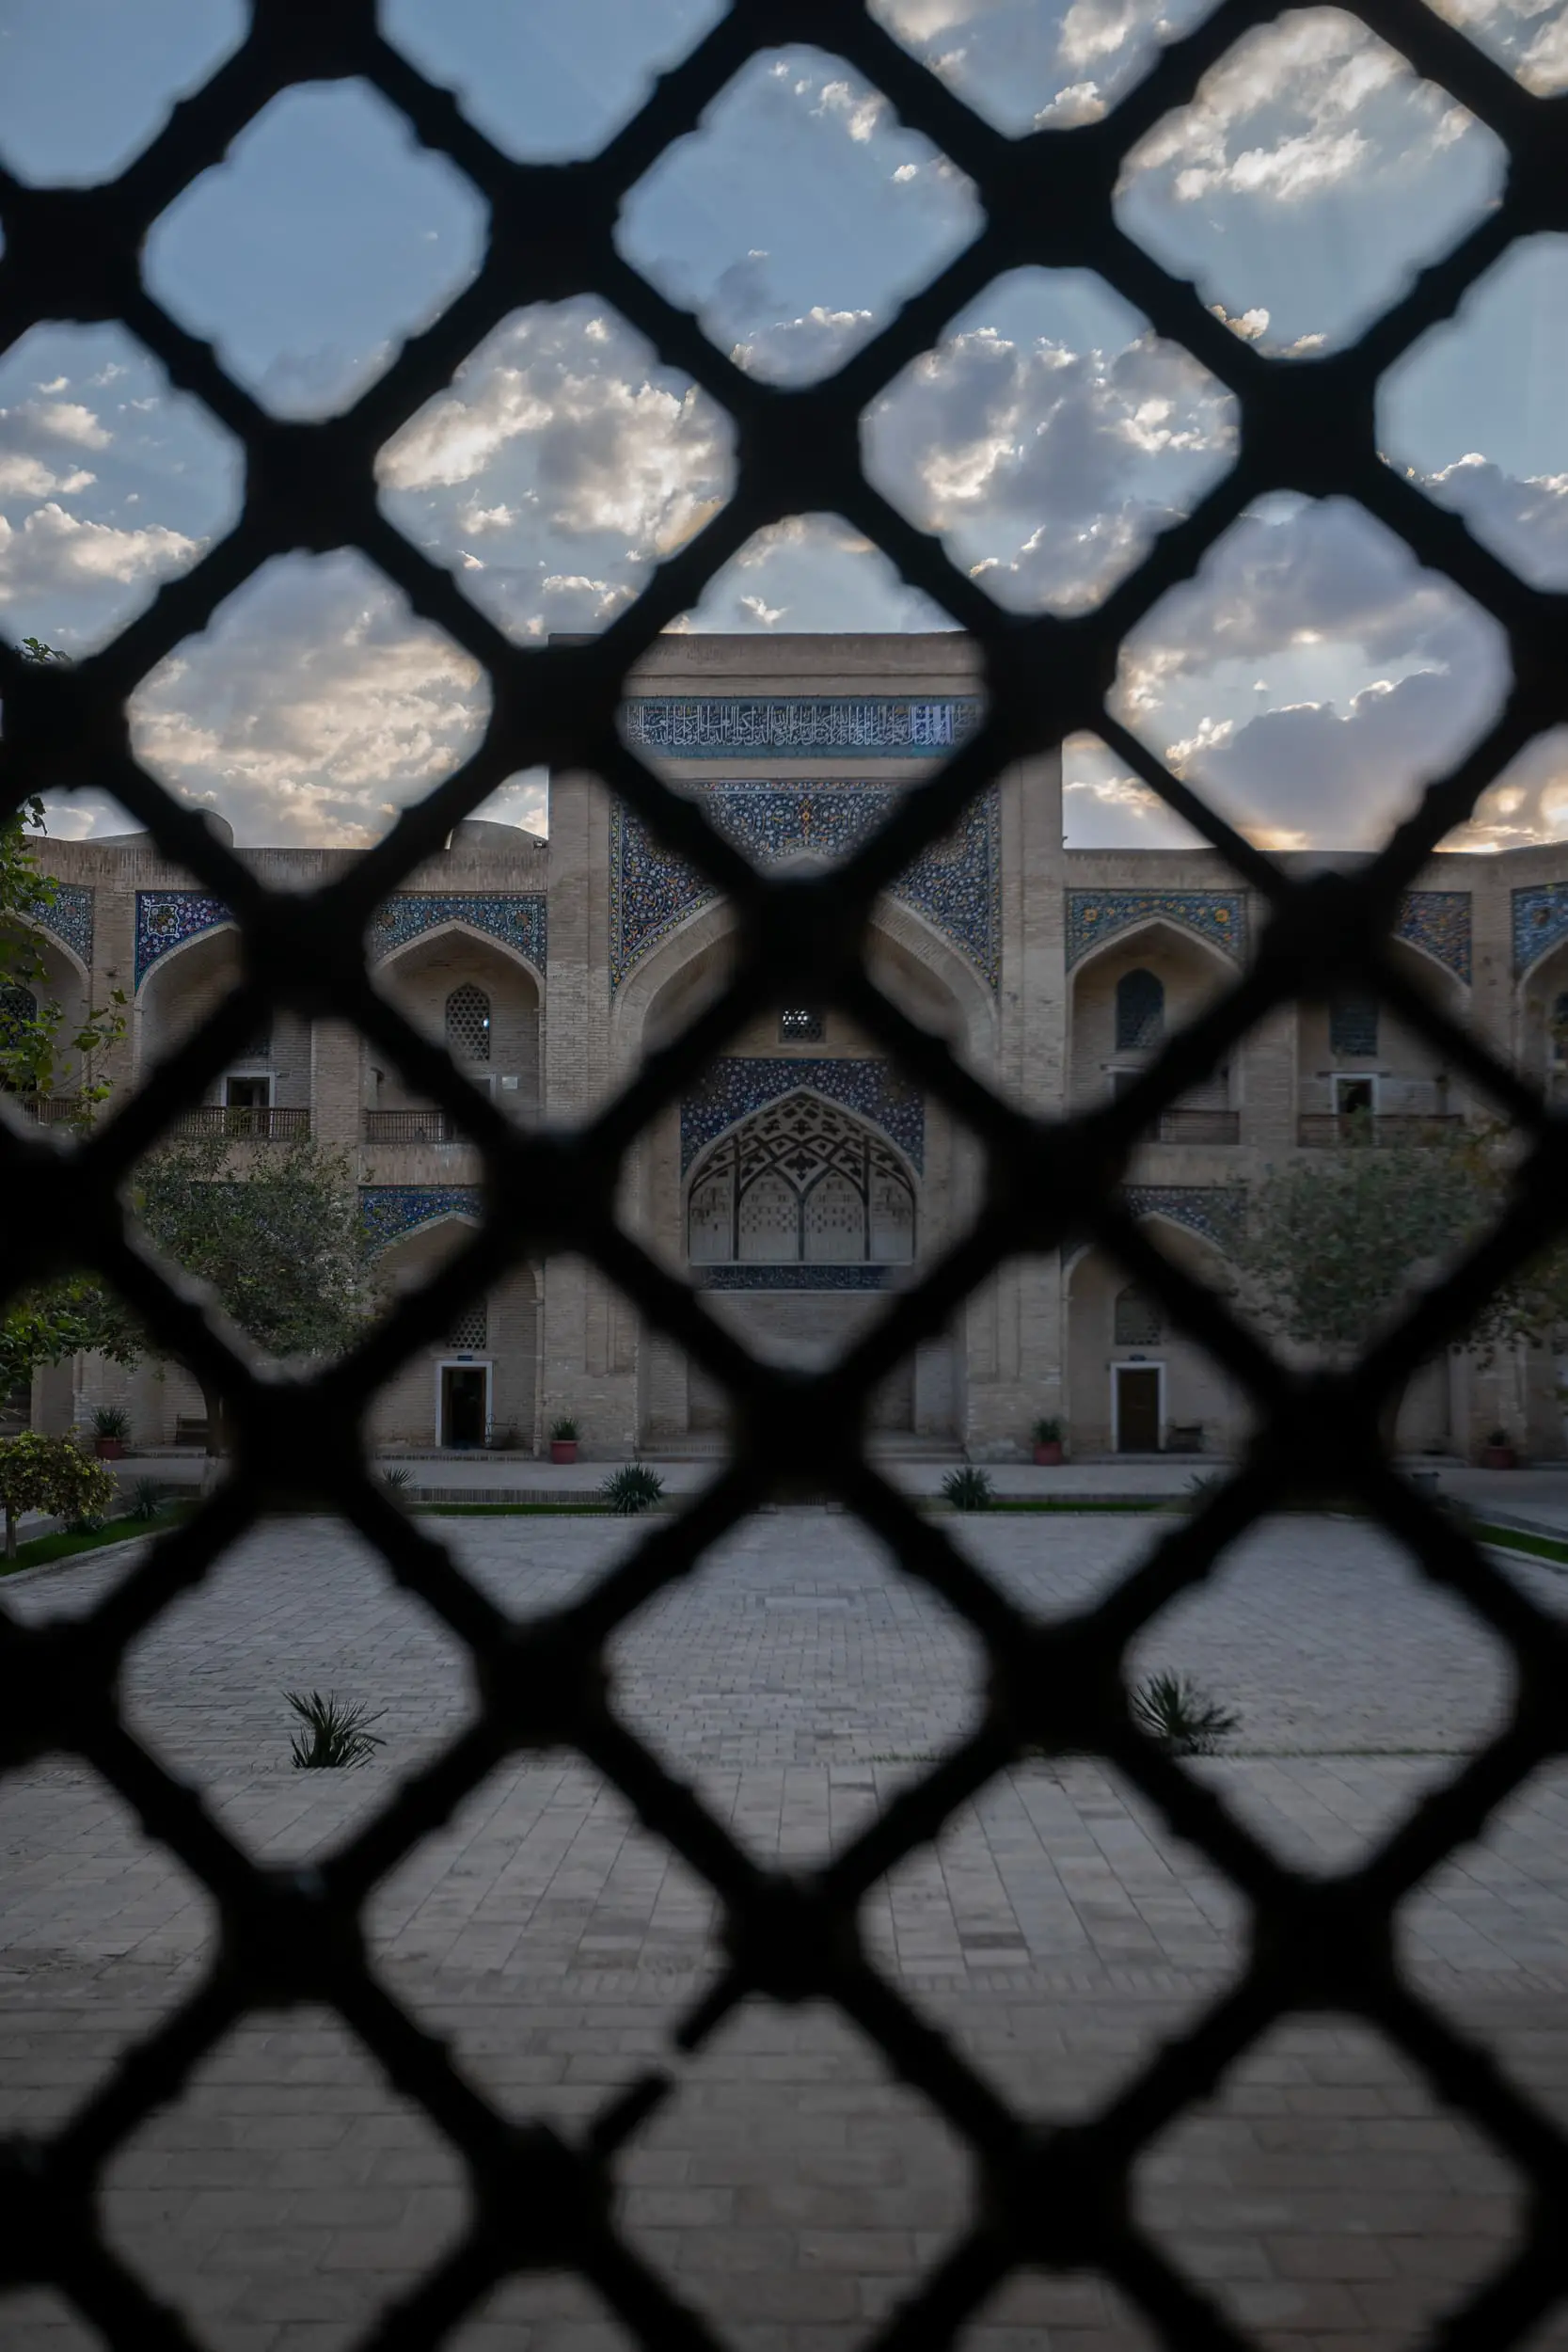 behind bars in Uzbekistan